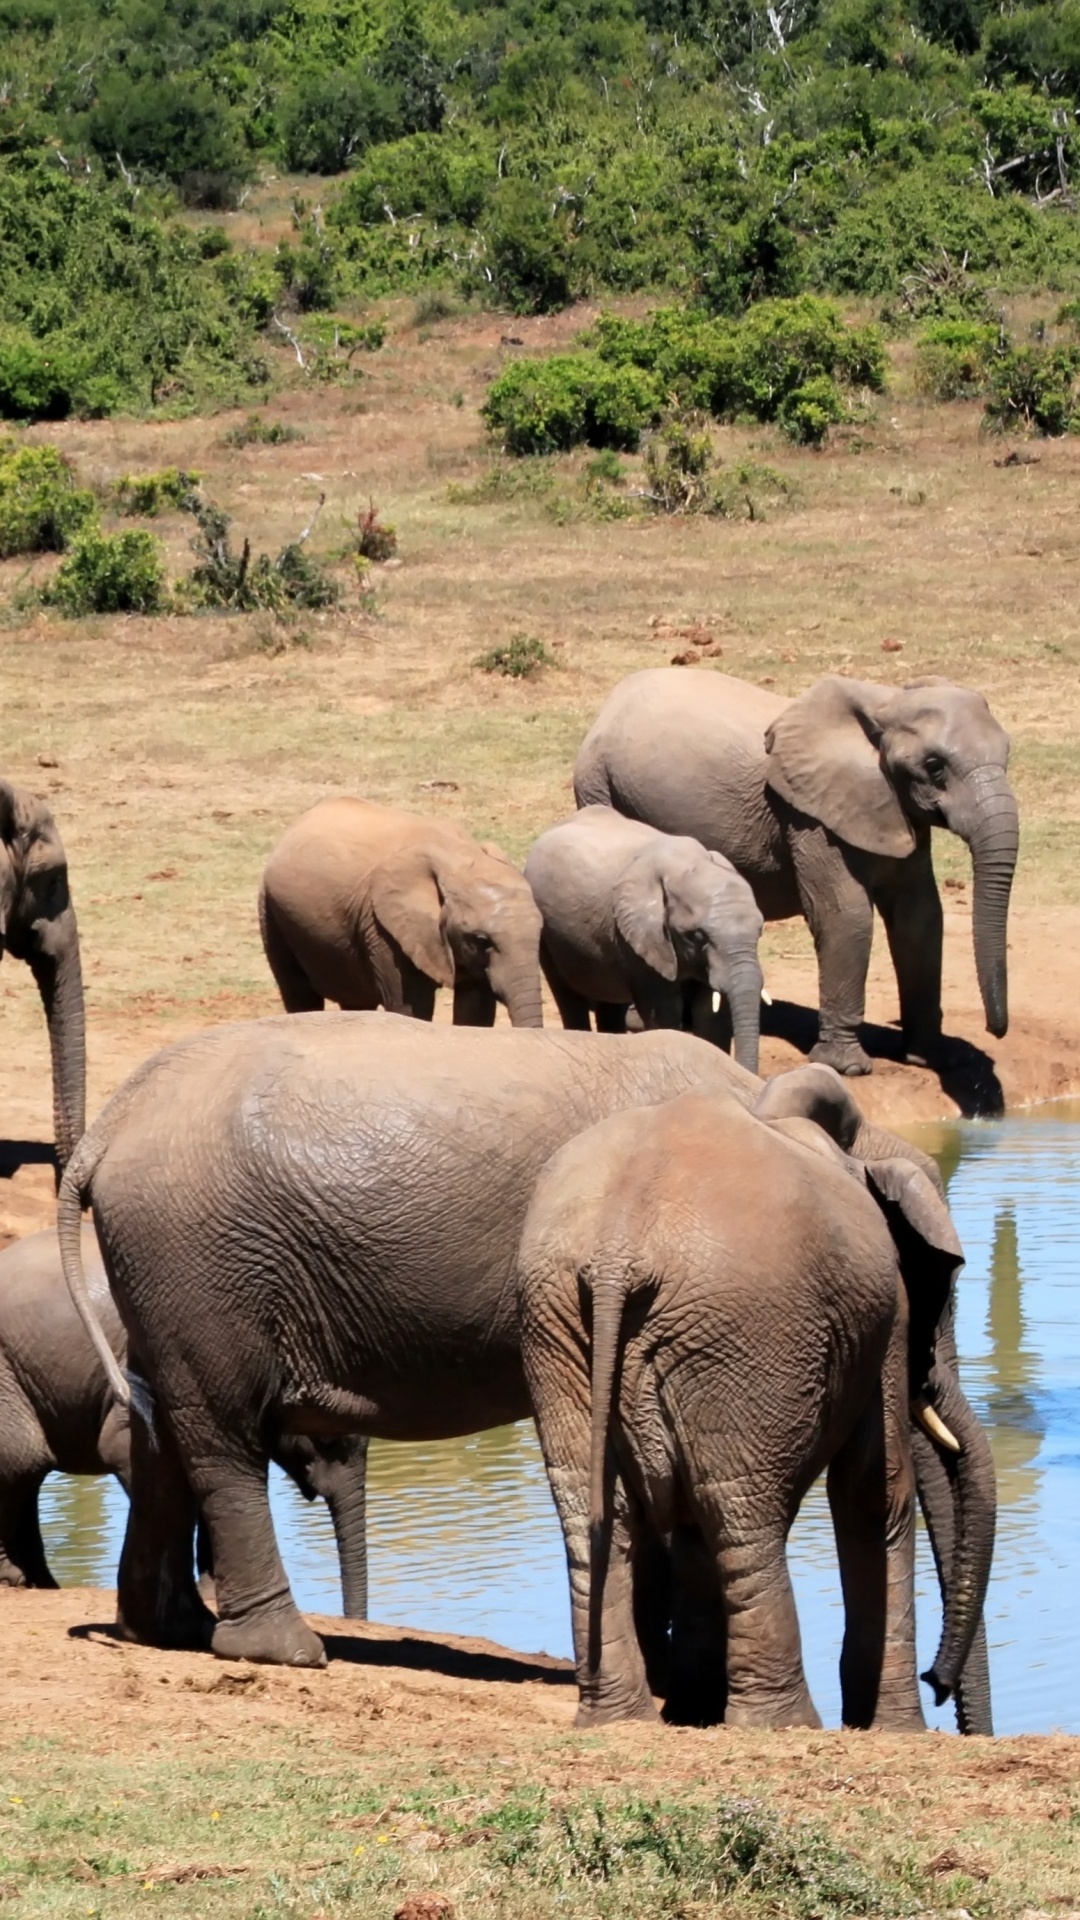 陆地动物, 野生动物, 大象和猛犸象, 牛群, 非洲象 壁纸 1080x1920 允许